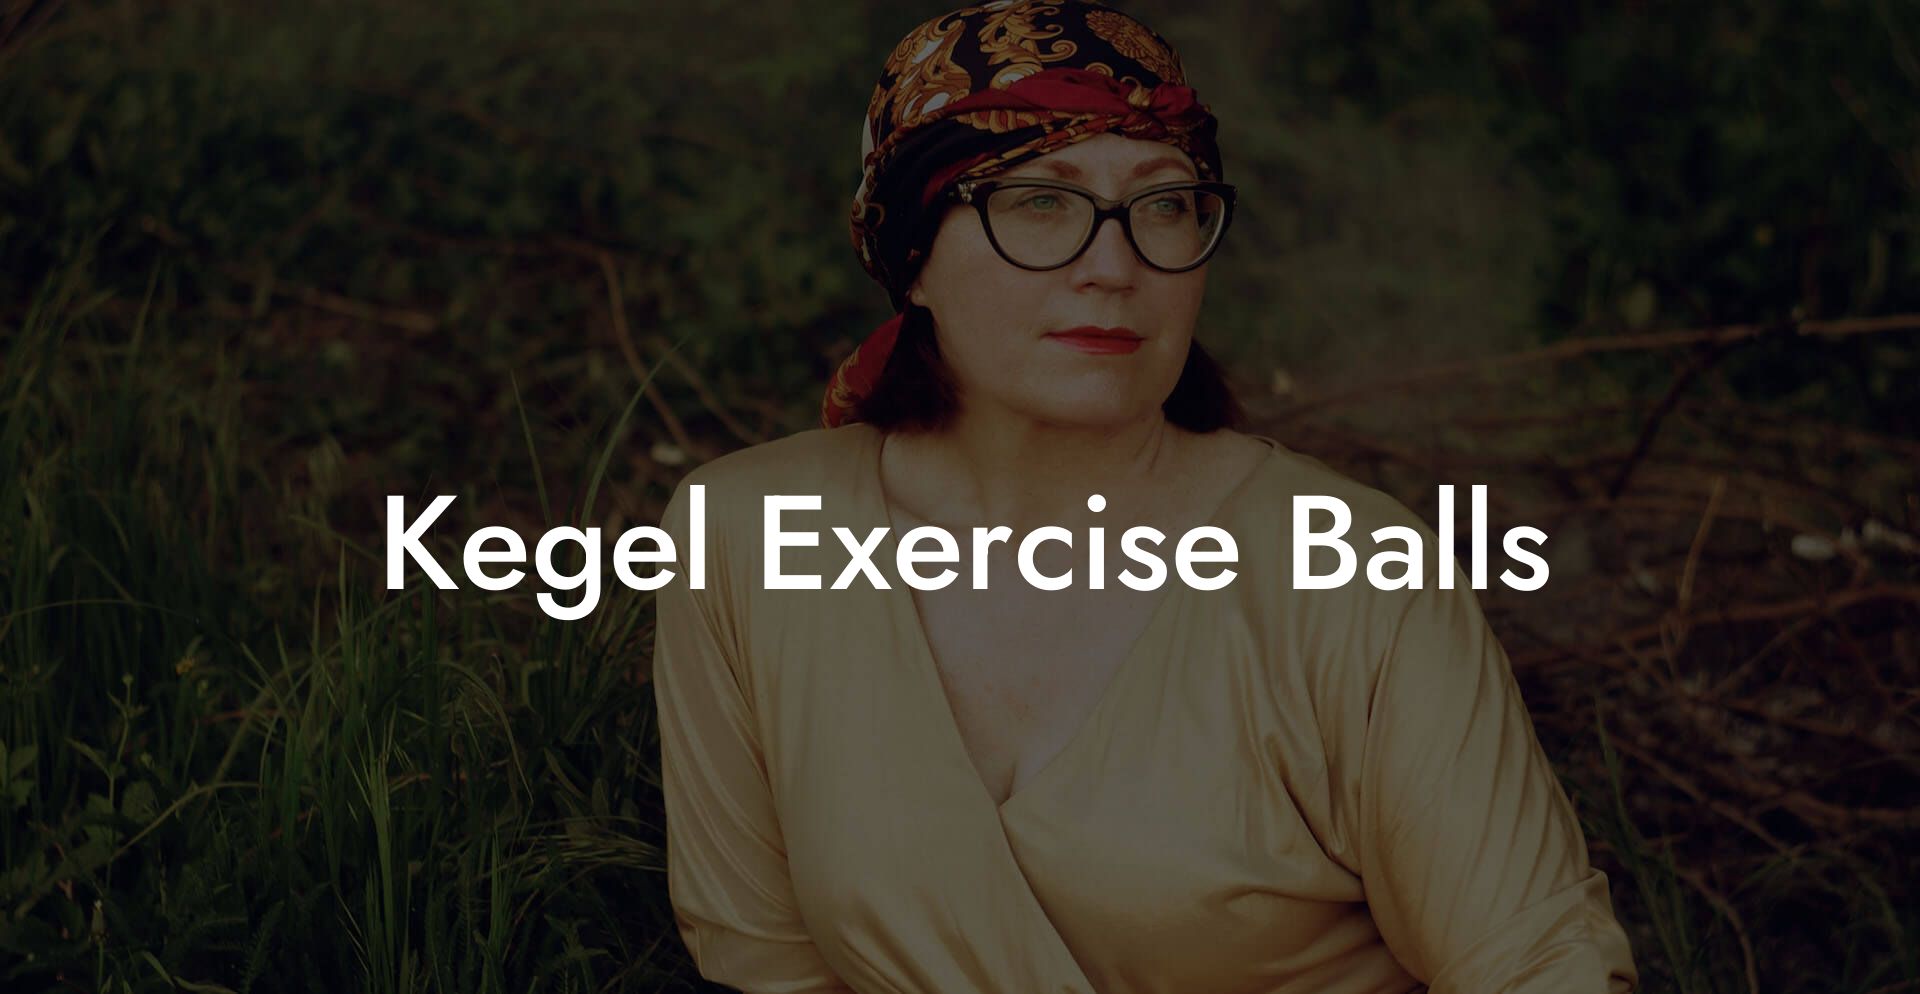 Kegel Exercise Balls